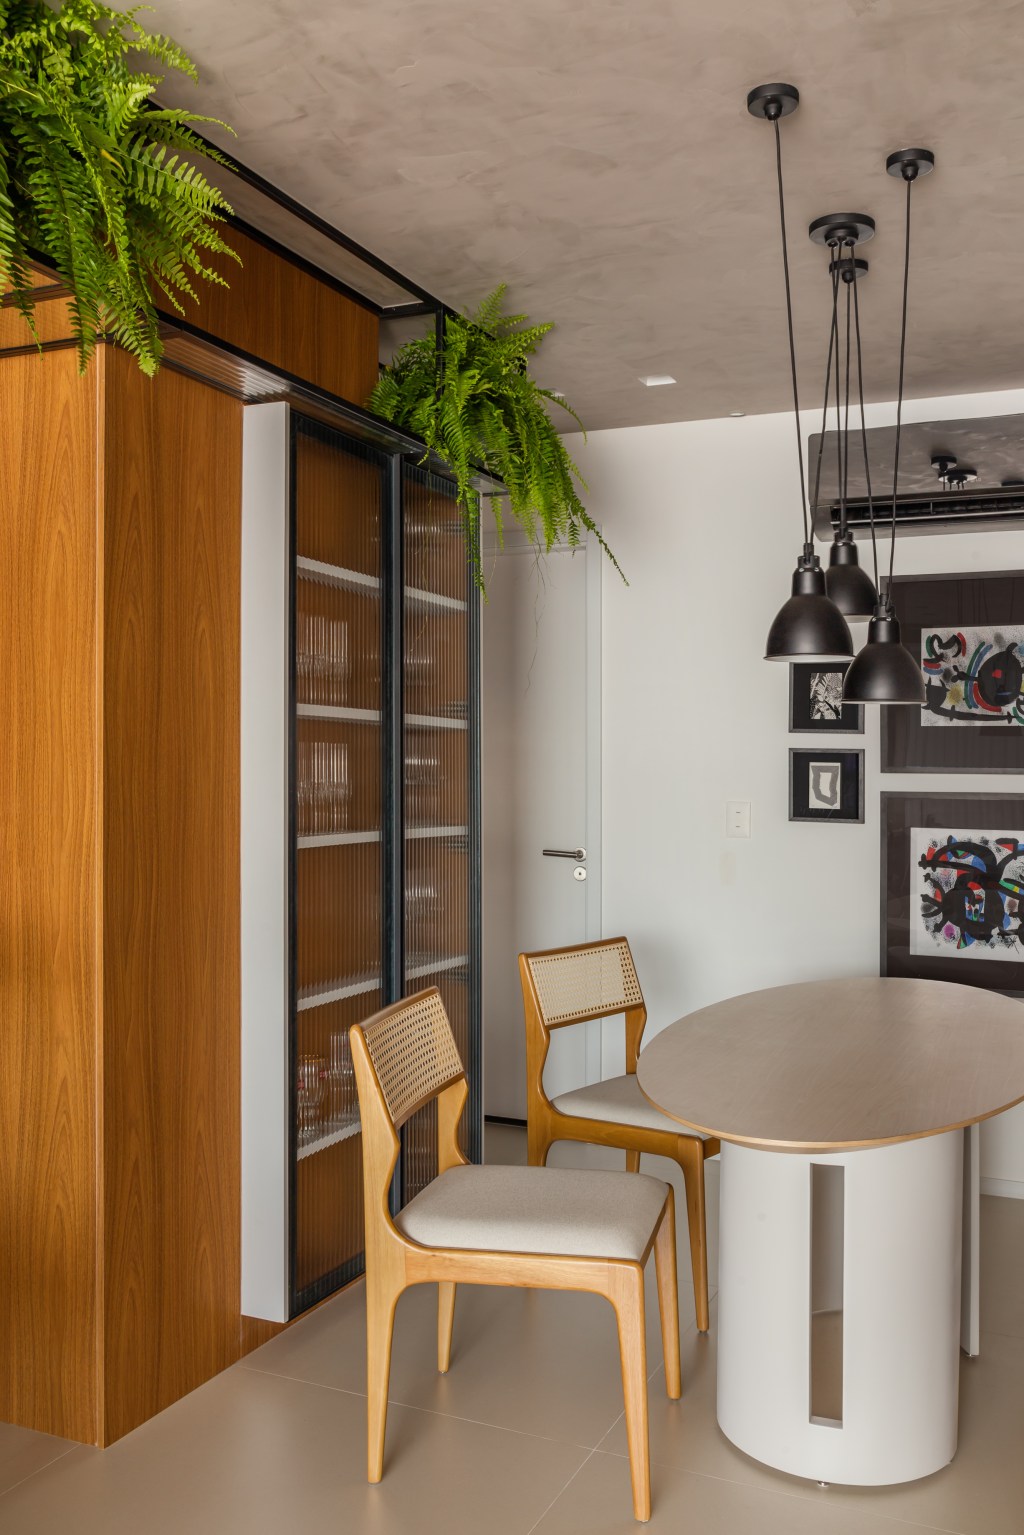 Apê de 100 m2 prático décor contemporâneo toques industriais arquiteto Rafael Ramos sala jantar mesa cadeira cristaleira quadro luminaria